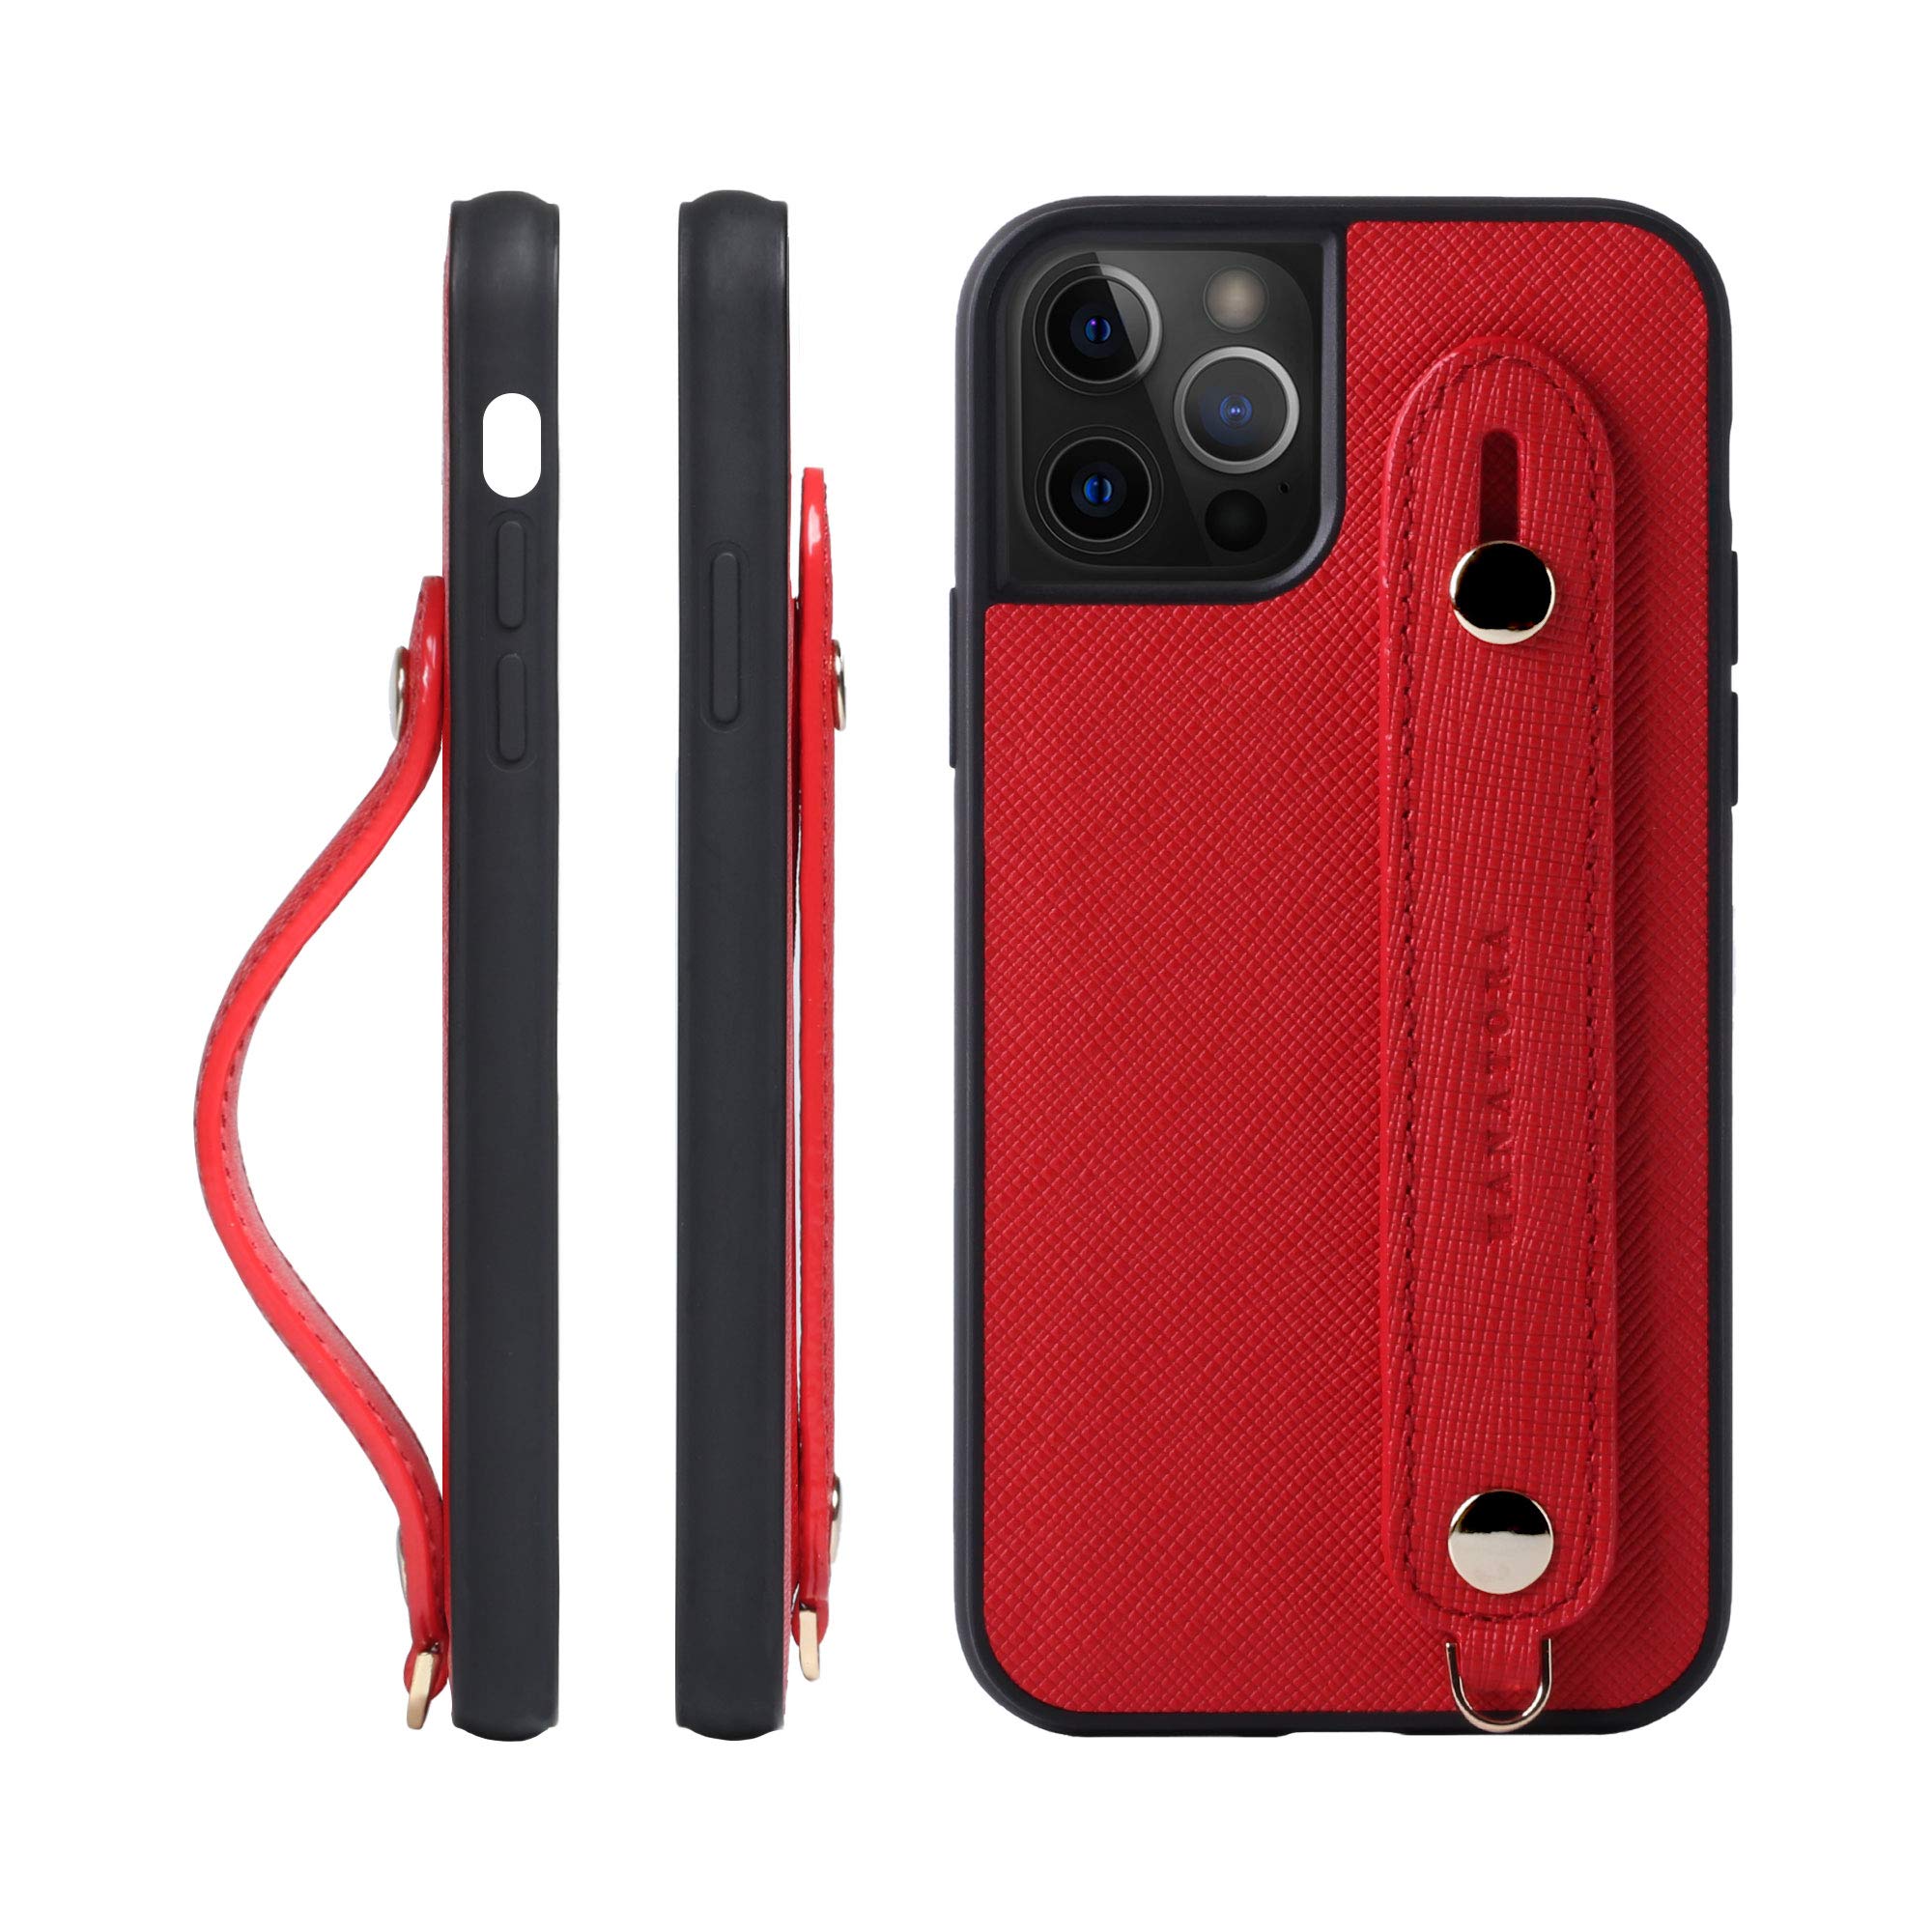 [HANATORA] iPhone12/iPhone12 Pro ケース 本革 サフィアーノ・レザー スマホケース 落下防止 耐衝撃 スタンド機能 ハンディベルト ハンドメイド ストラップホール ストラップリング ギフトにも最適品 Handy 赤 スカーレット レッド XGH-12Pro-Red